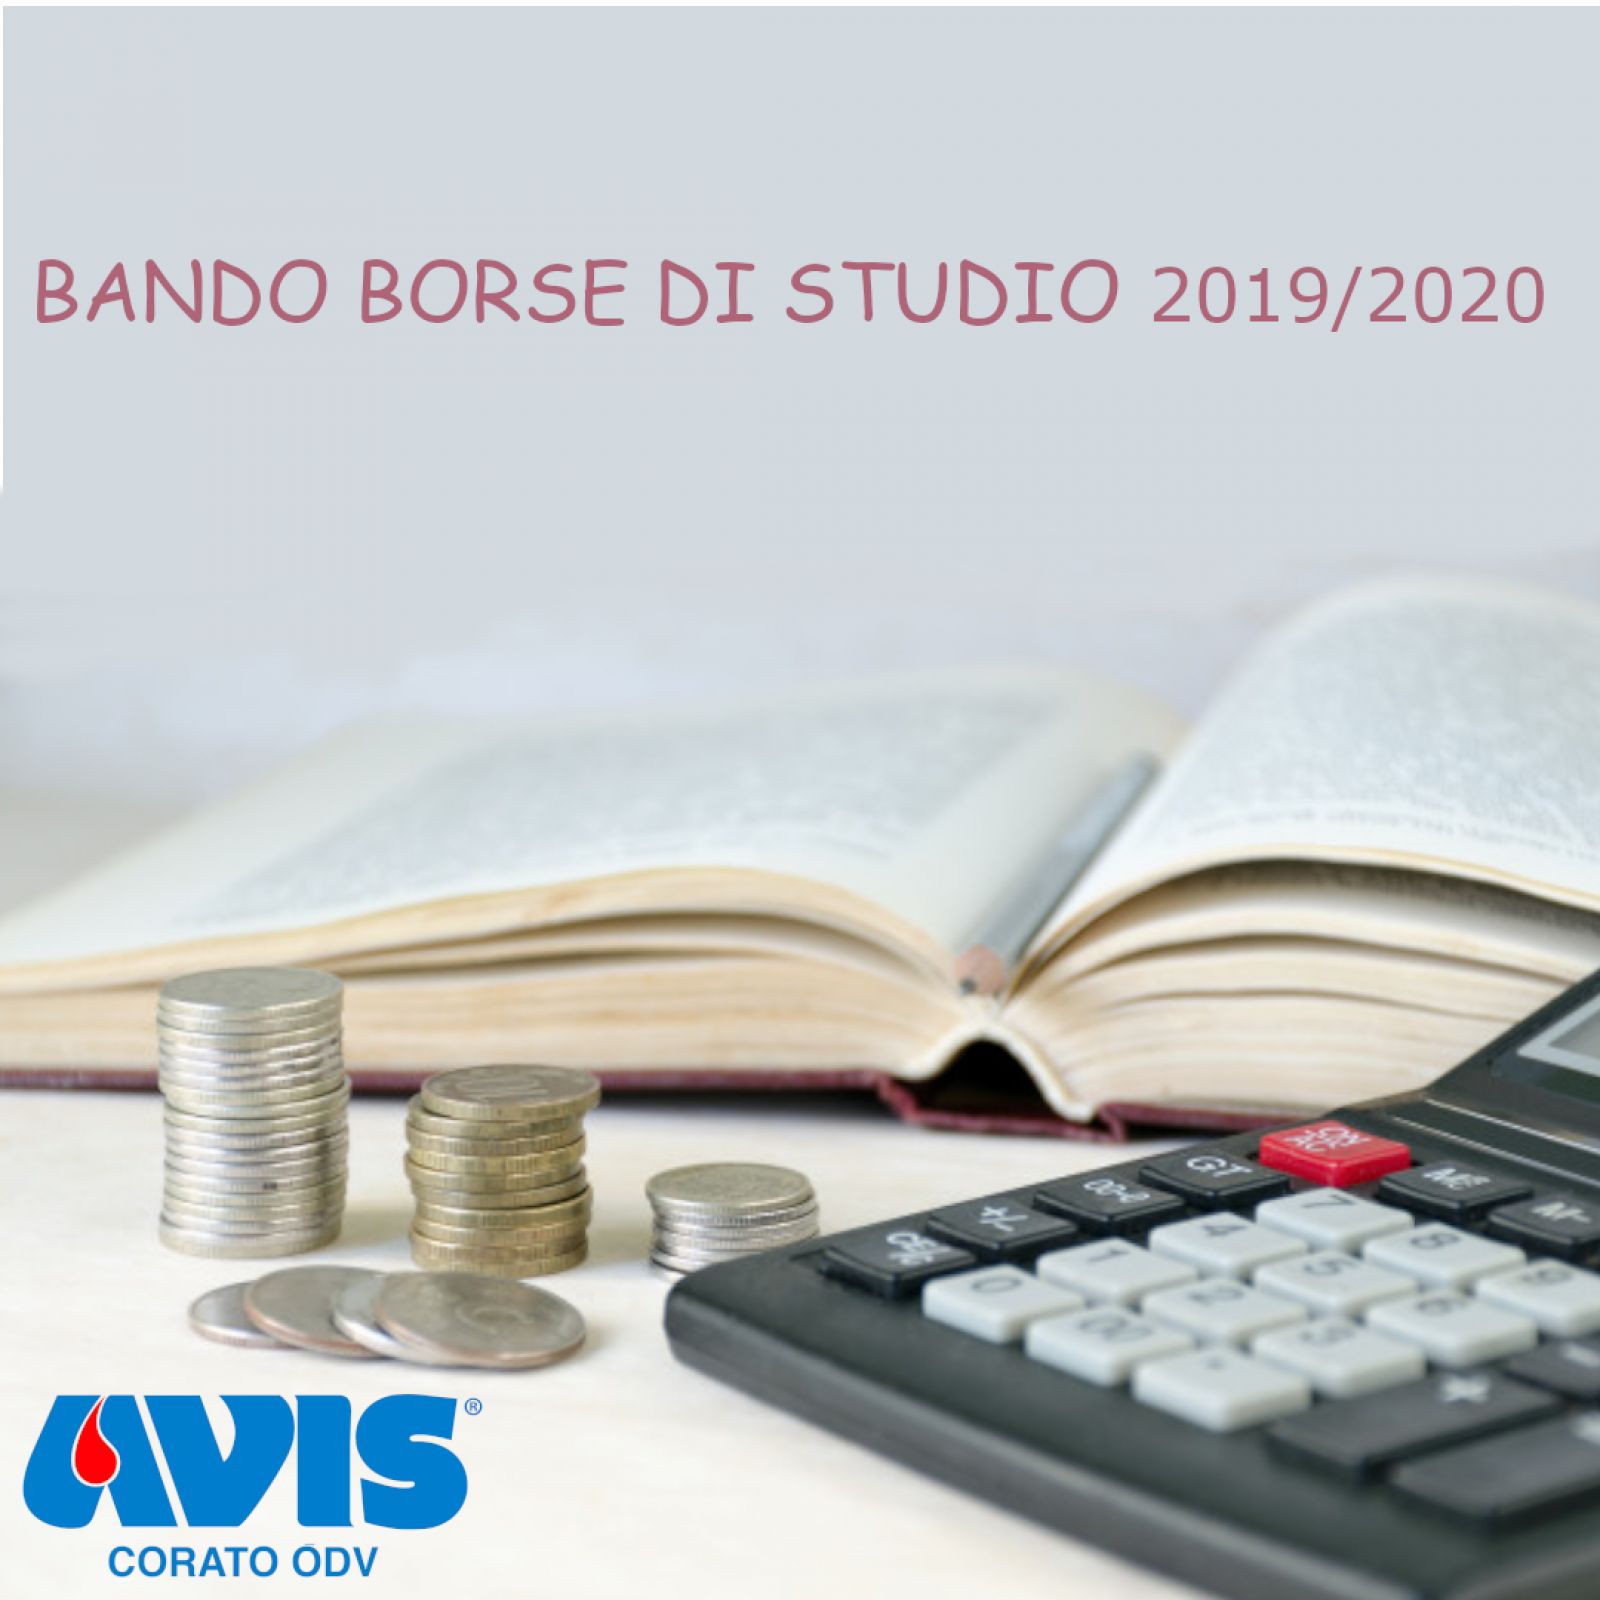 BANDO BORSE DI STUDIO 2019/2020